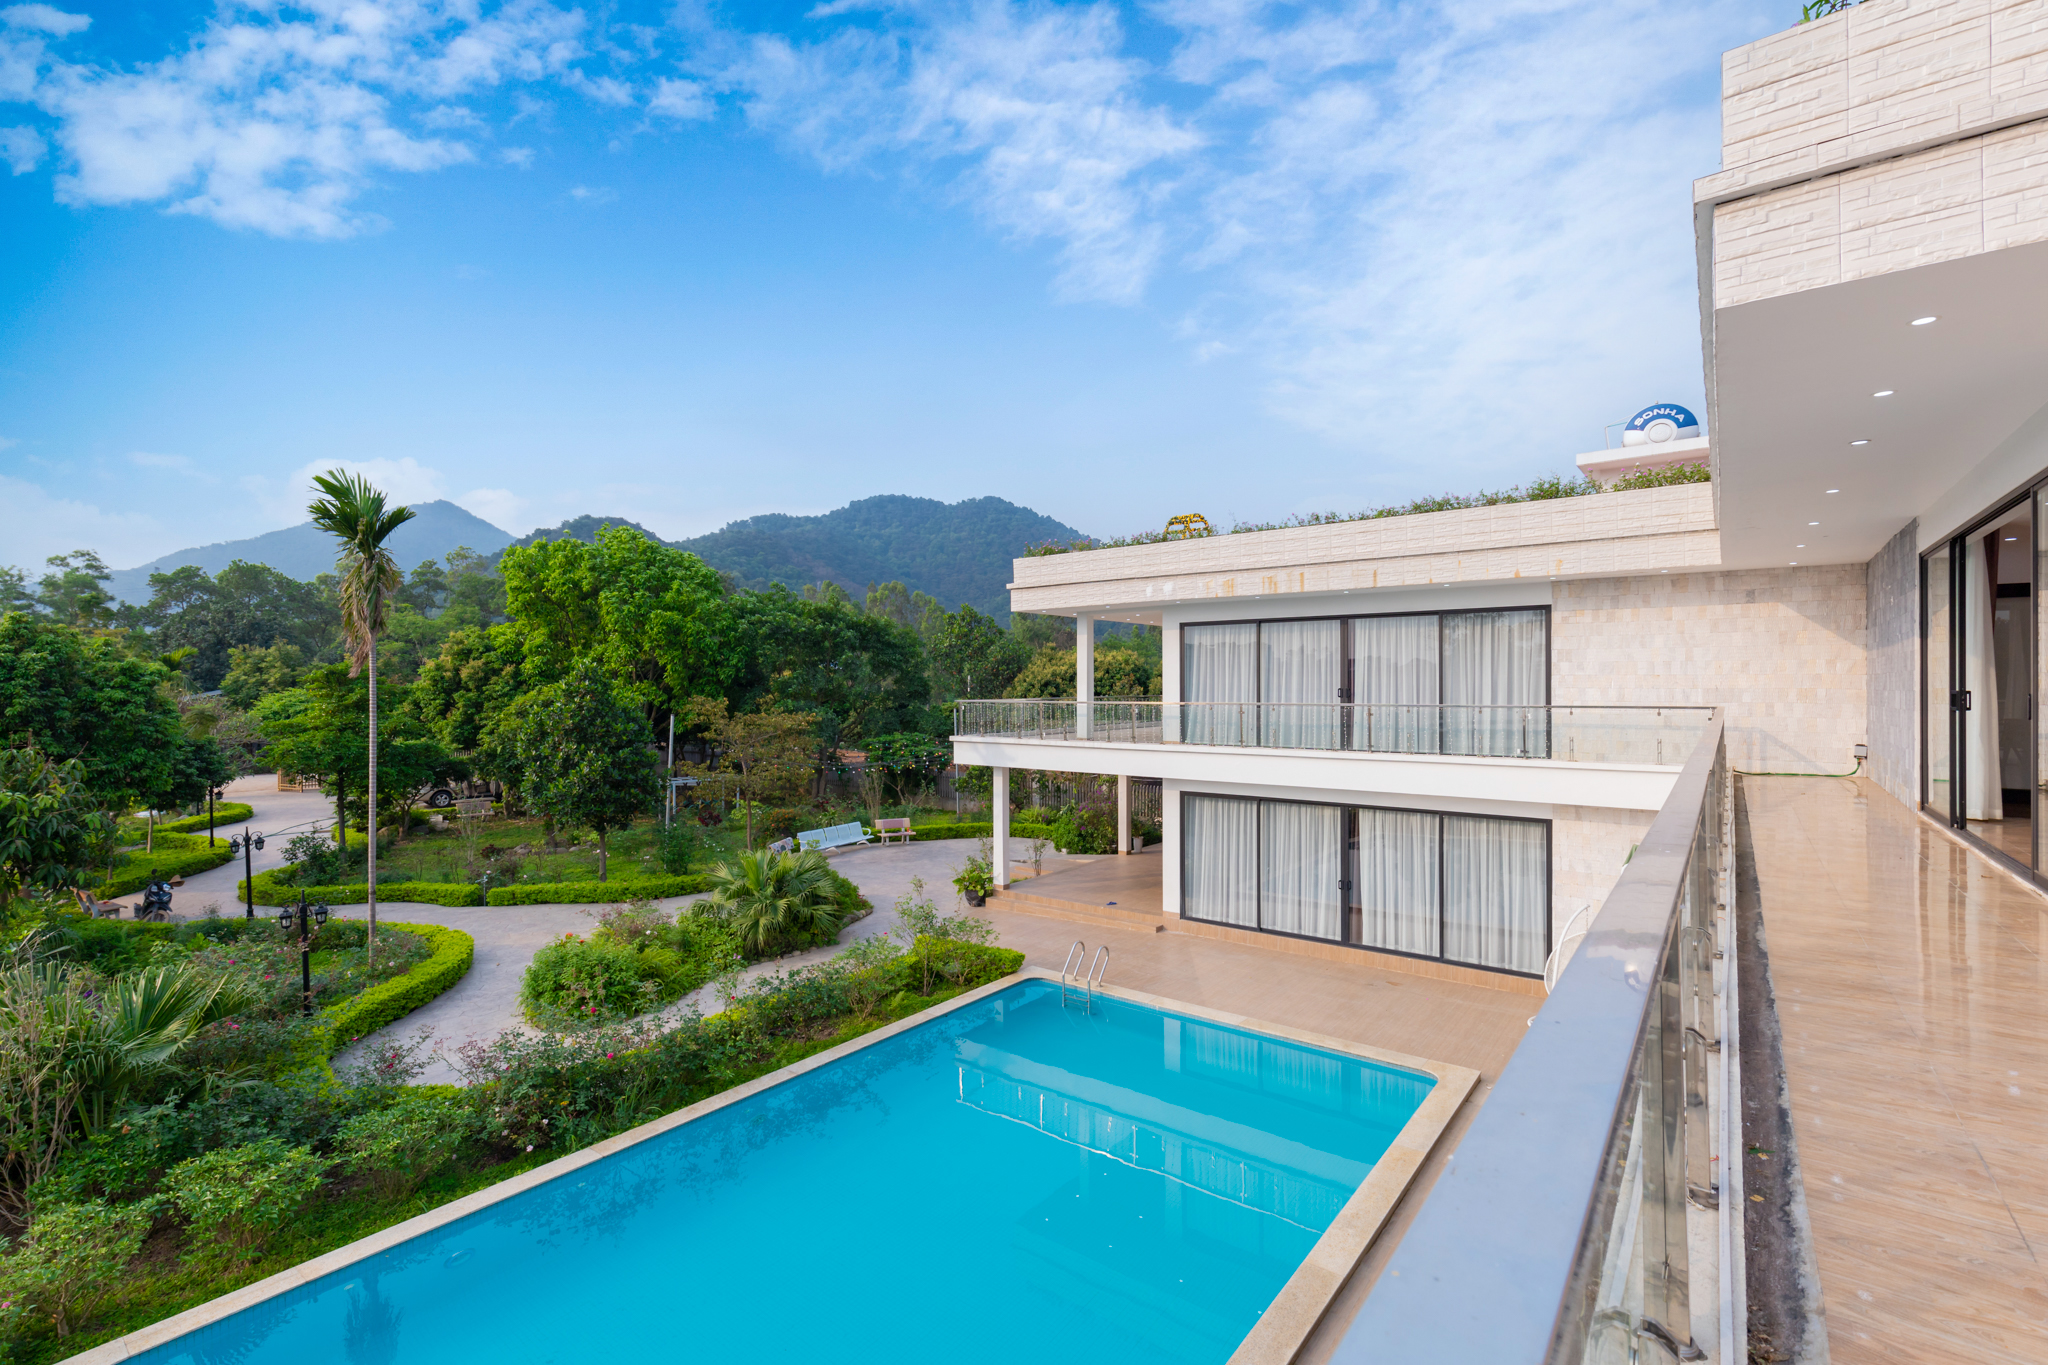 Lakeview villa Sóc Sơn - Review và bảng giá chi tiết nhất 2022